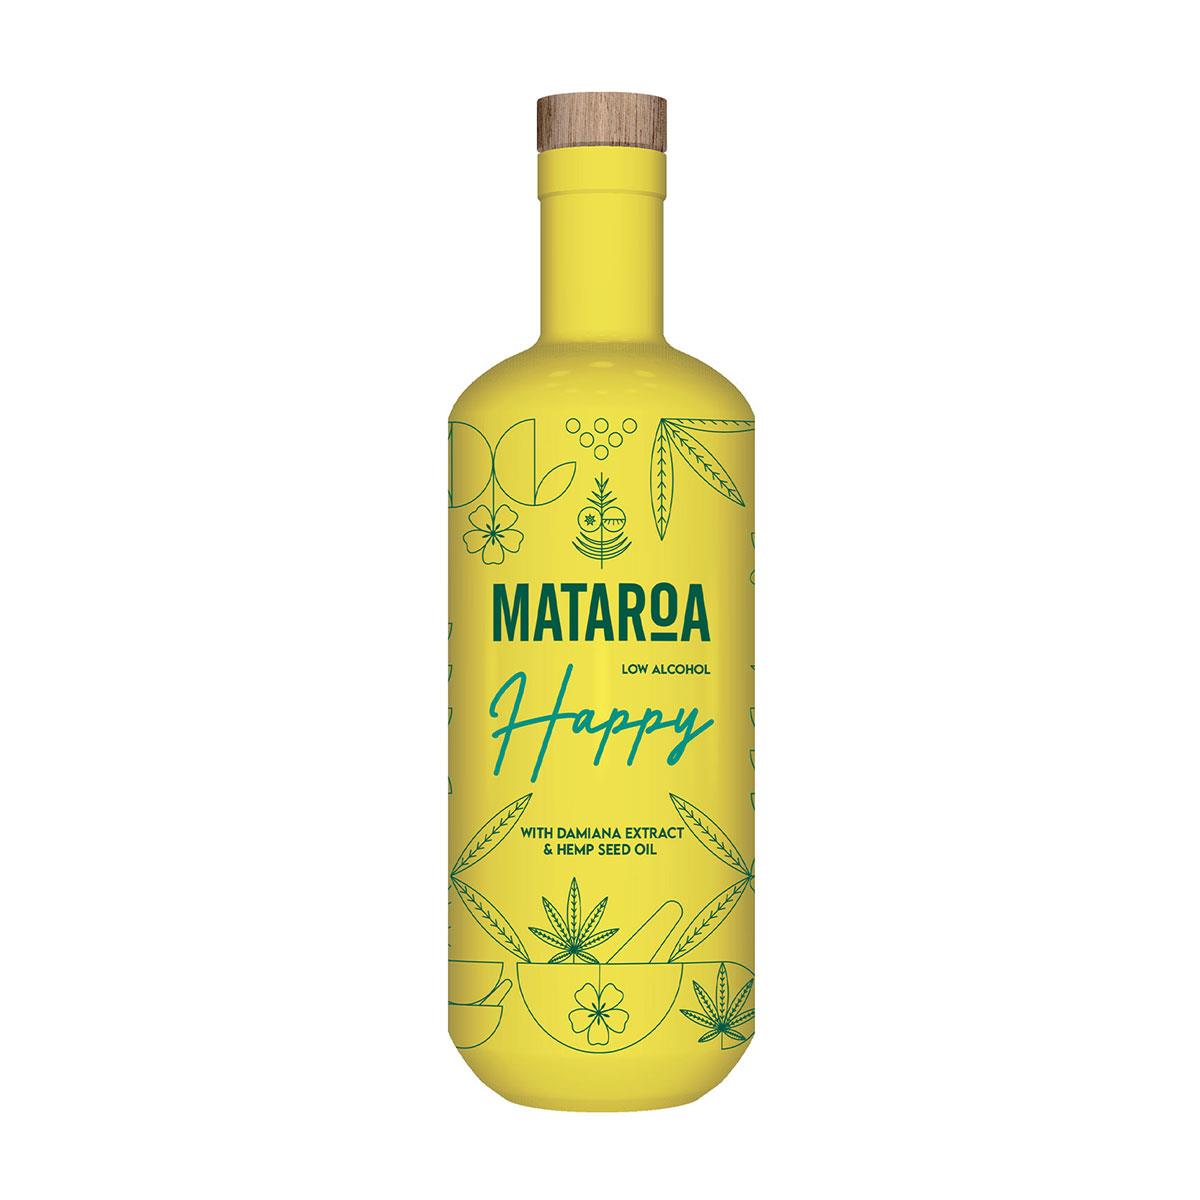 Mataroa Happy Low Alcohol 700ml